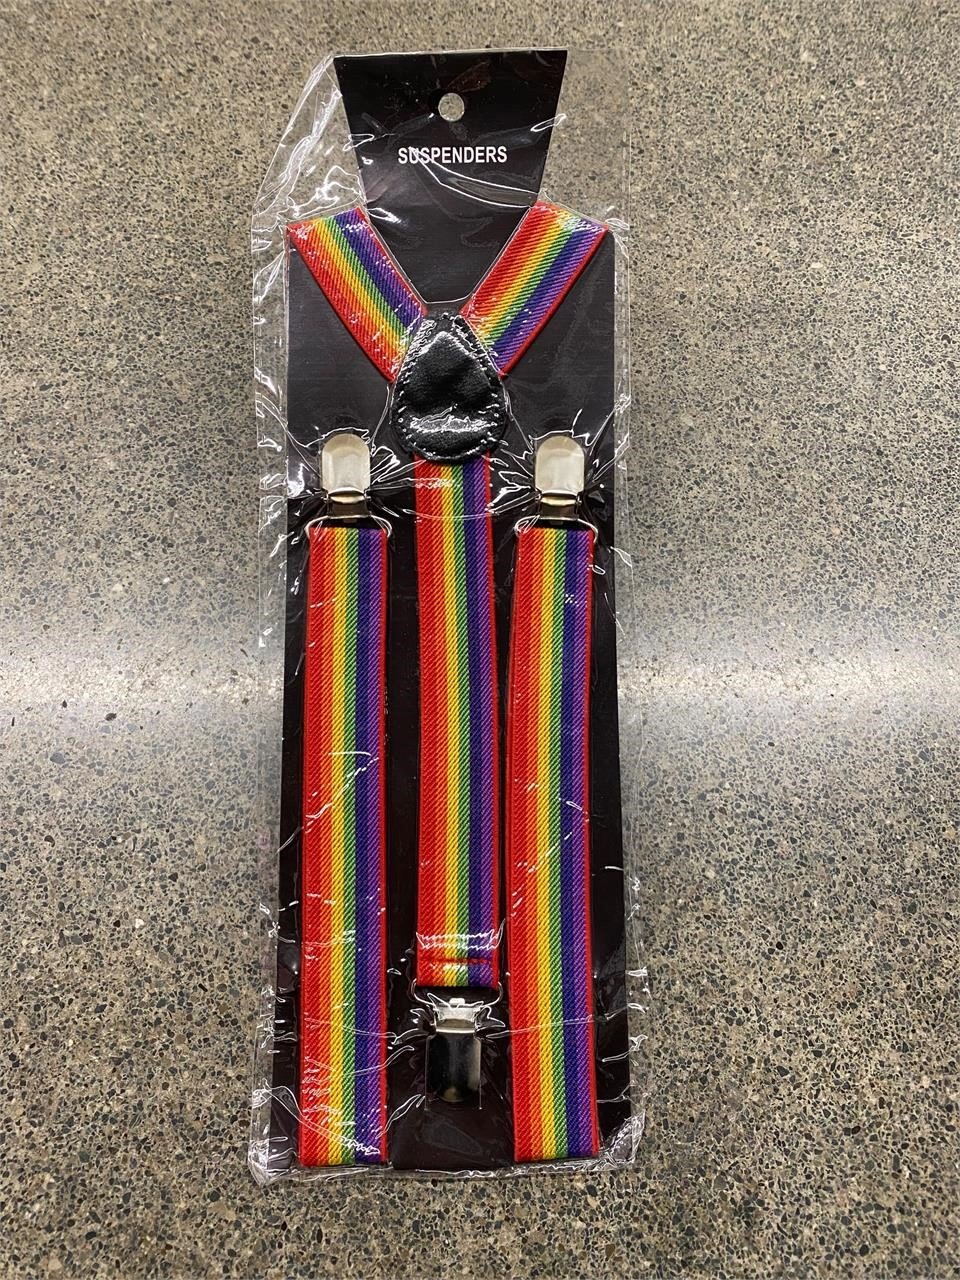 Rainbow suspenders New